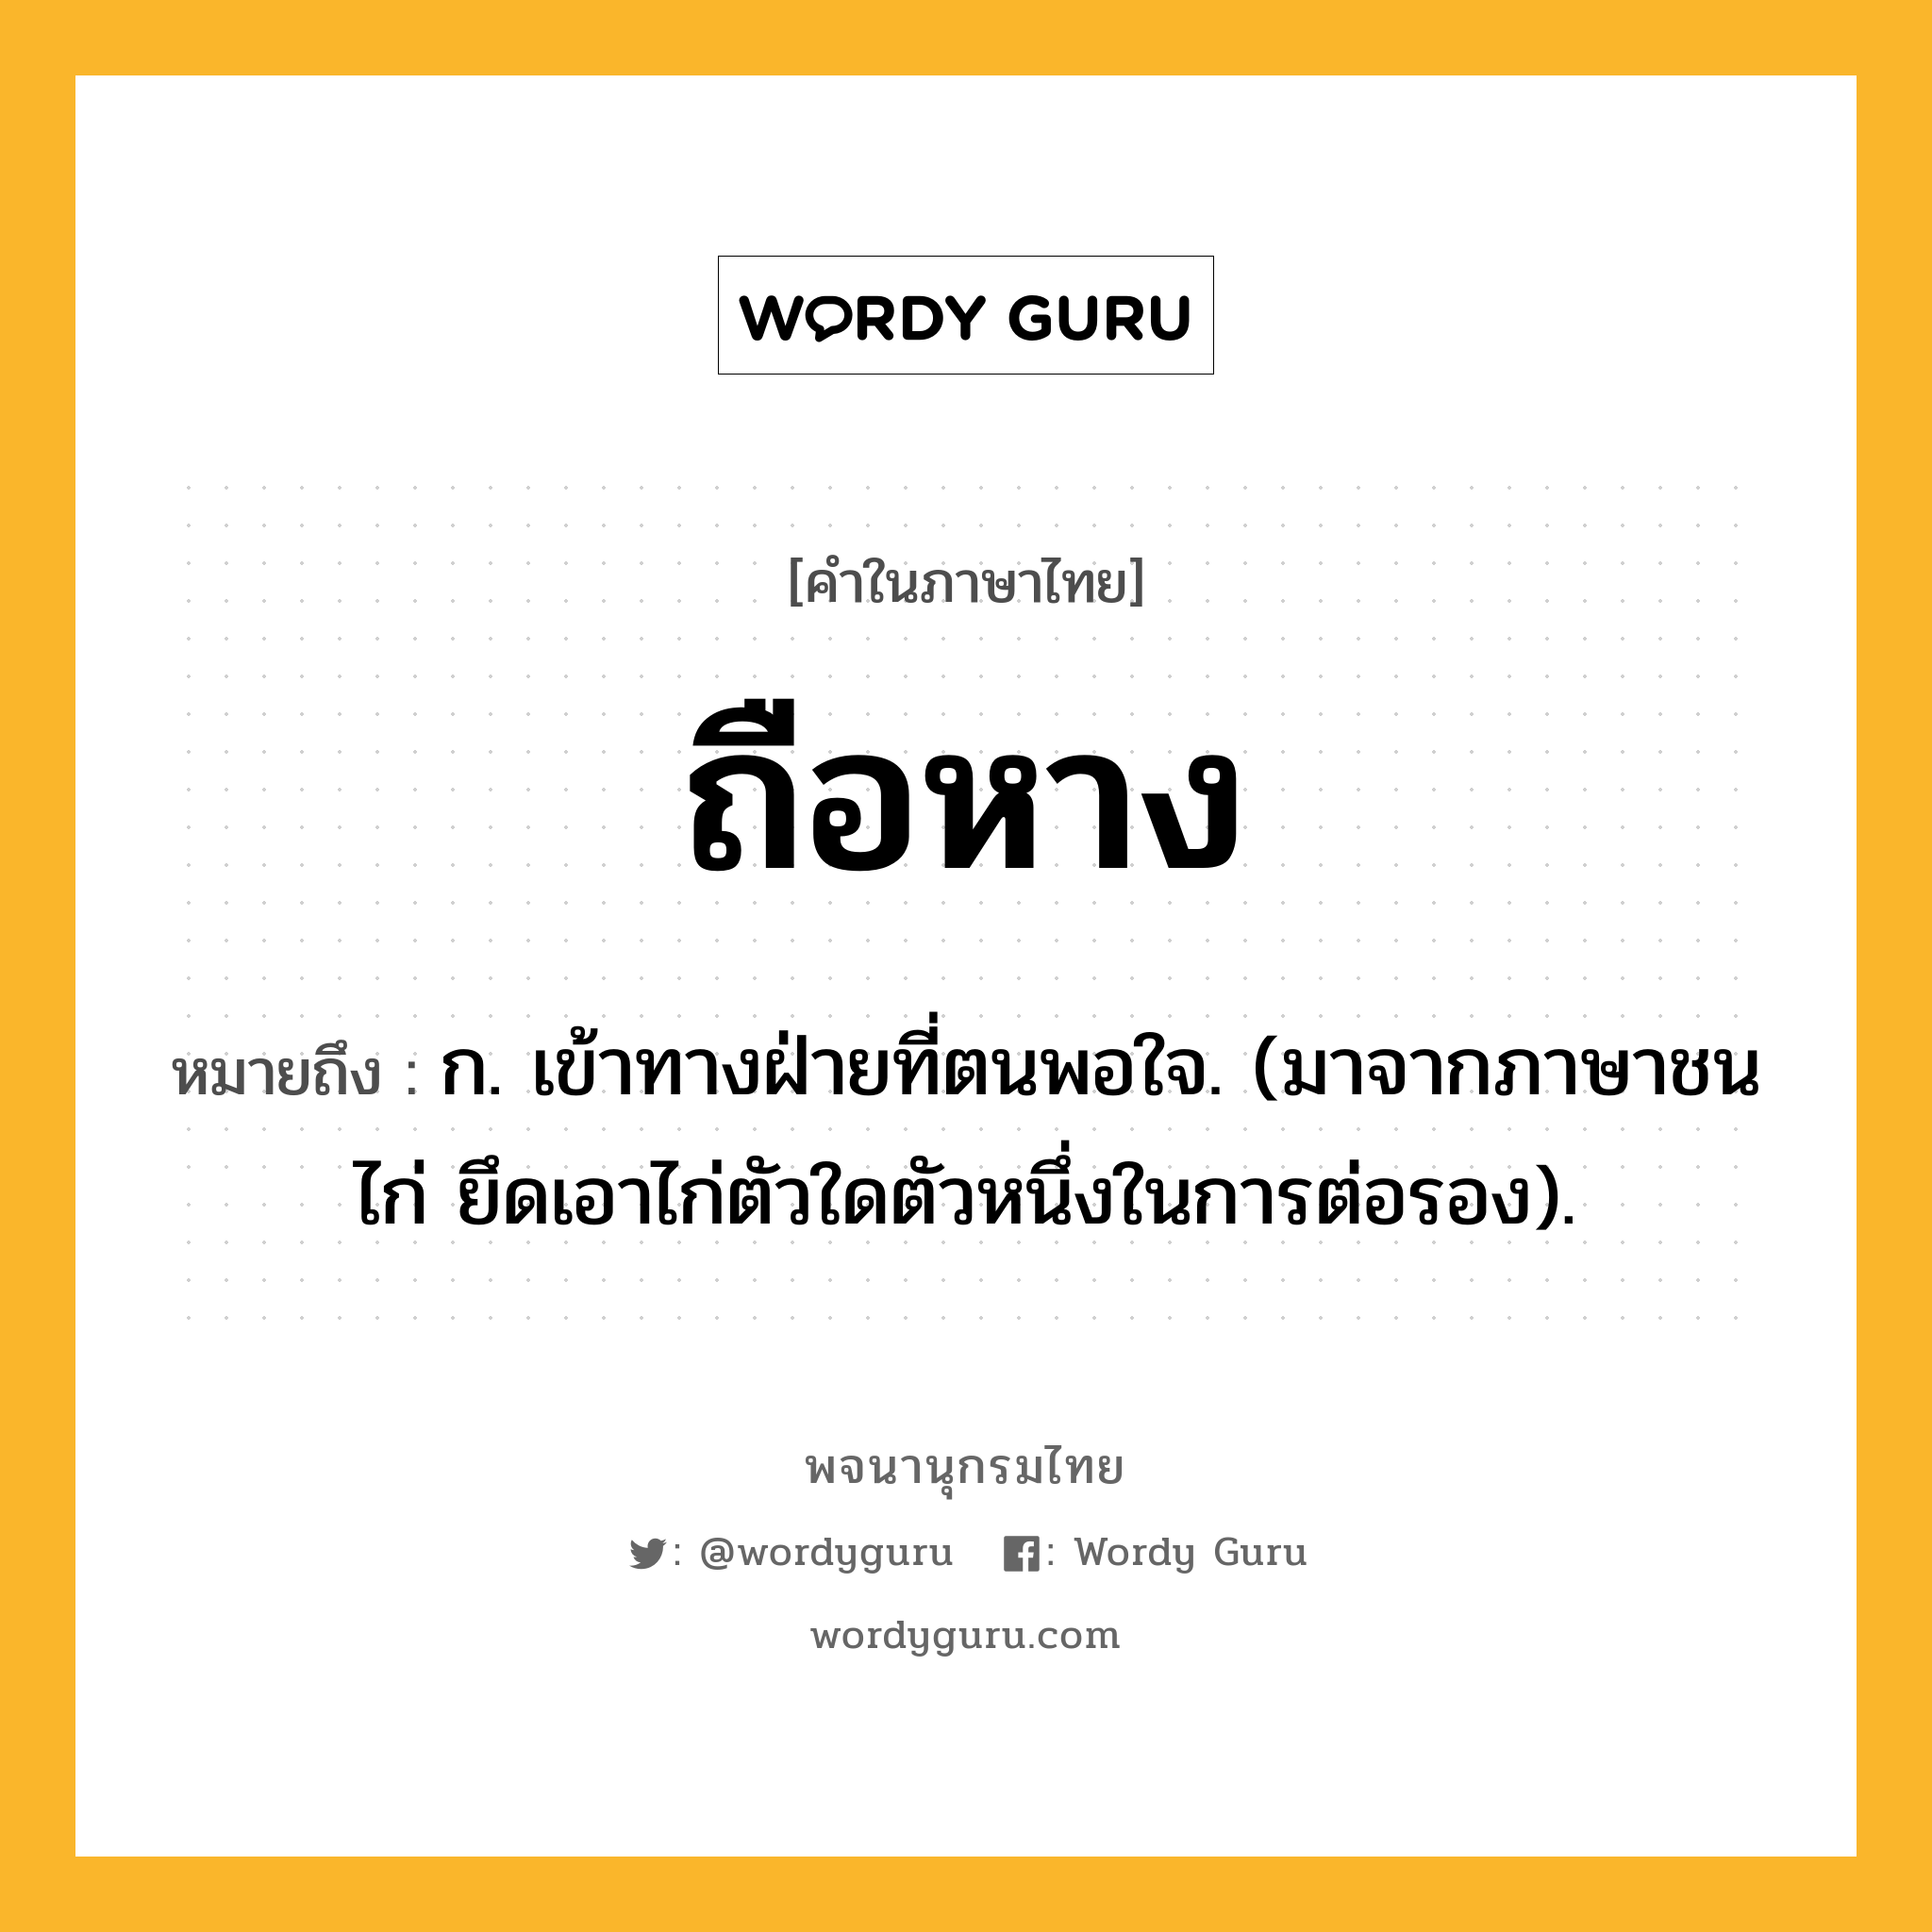 ถือหาง ความหมาย หมายถึงอะไร?, คำในภาษาไทย ถือหาง หมายถึง ก. เข้าทางฝ่ายที่ตนพอใจ. (มาจากภาษาชนไก่ ยึดเอาไก่ตัวใดตัวหนึ่งในการต่อรอง).